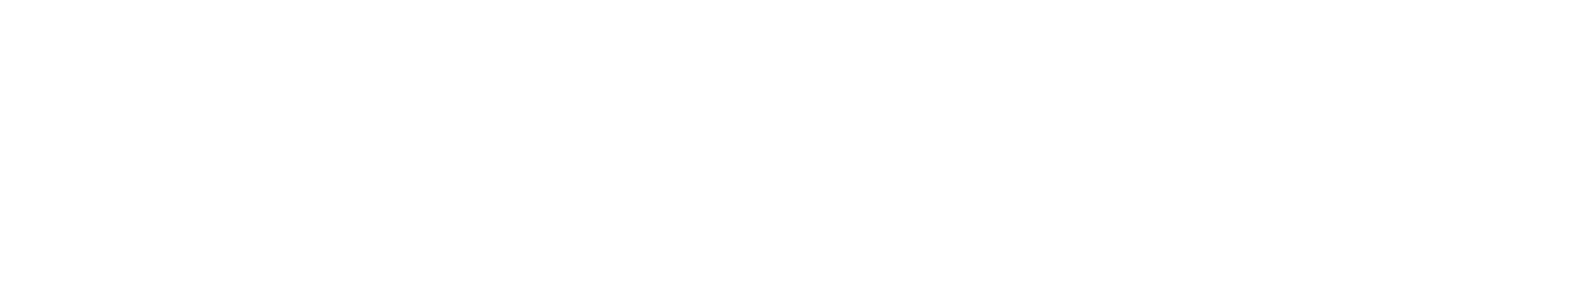 IBC Recruitment Logo - White